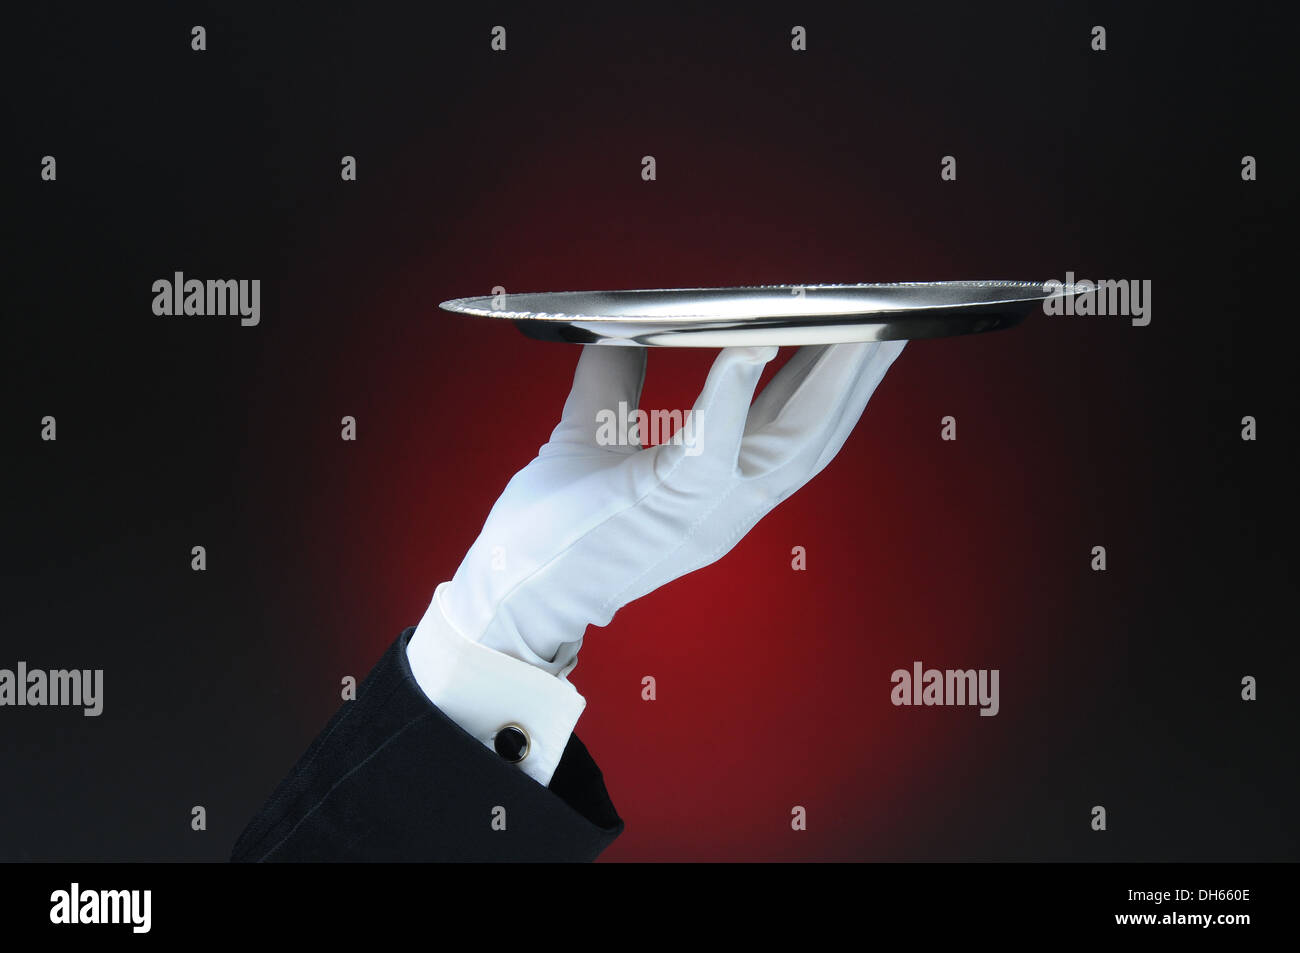 Primer plano de la mano de un camarero sosteniendo una bandeja de servicio de plata en la punta de sus dedos a través de una luz de fondo rojo oscuro. Foto de stock